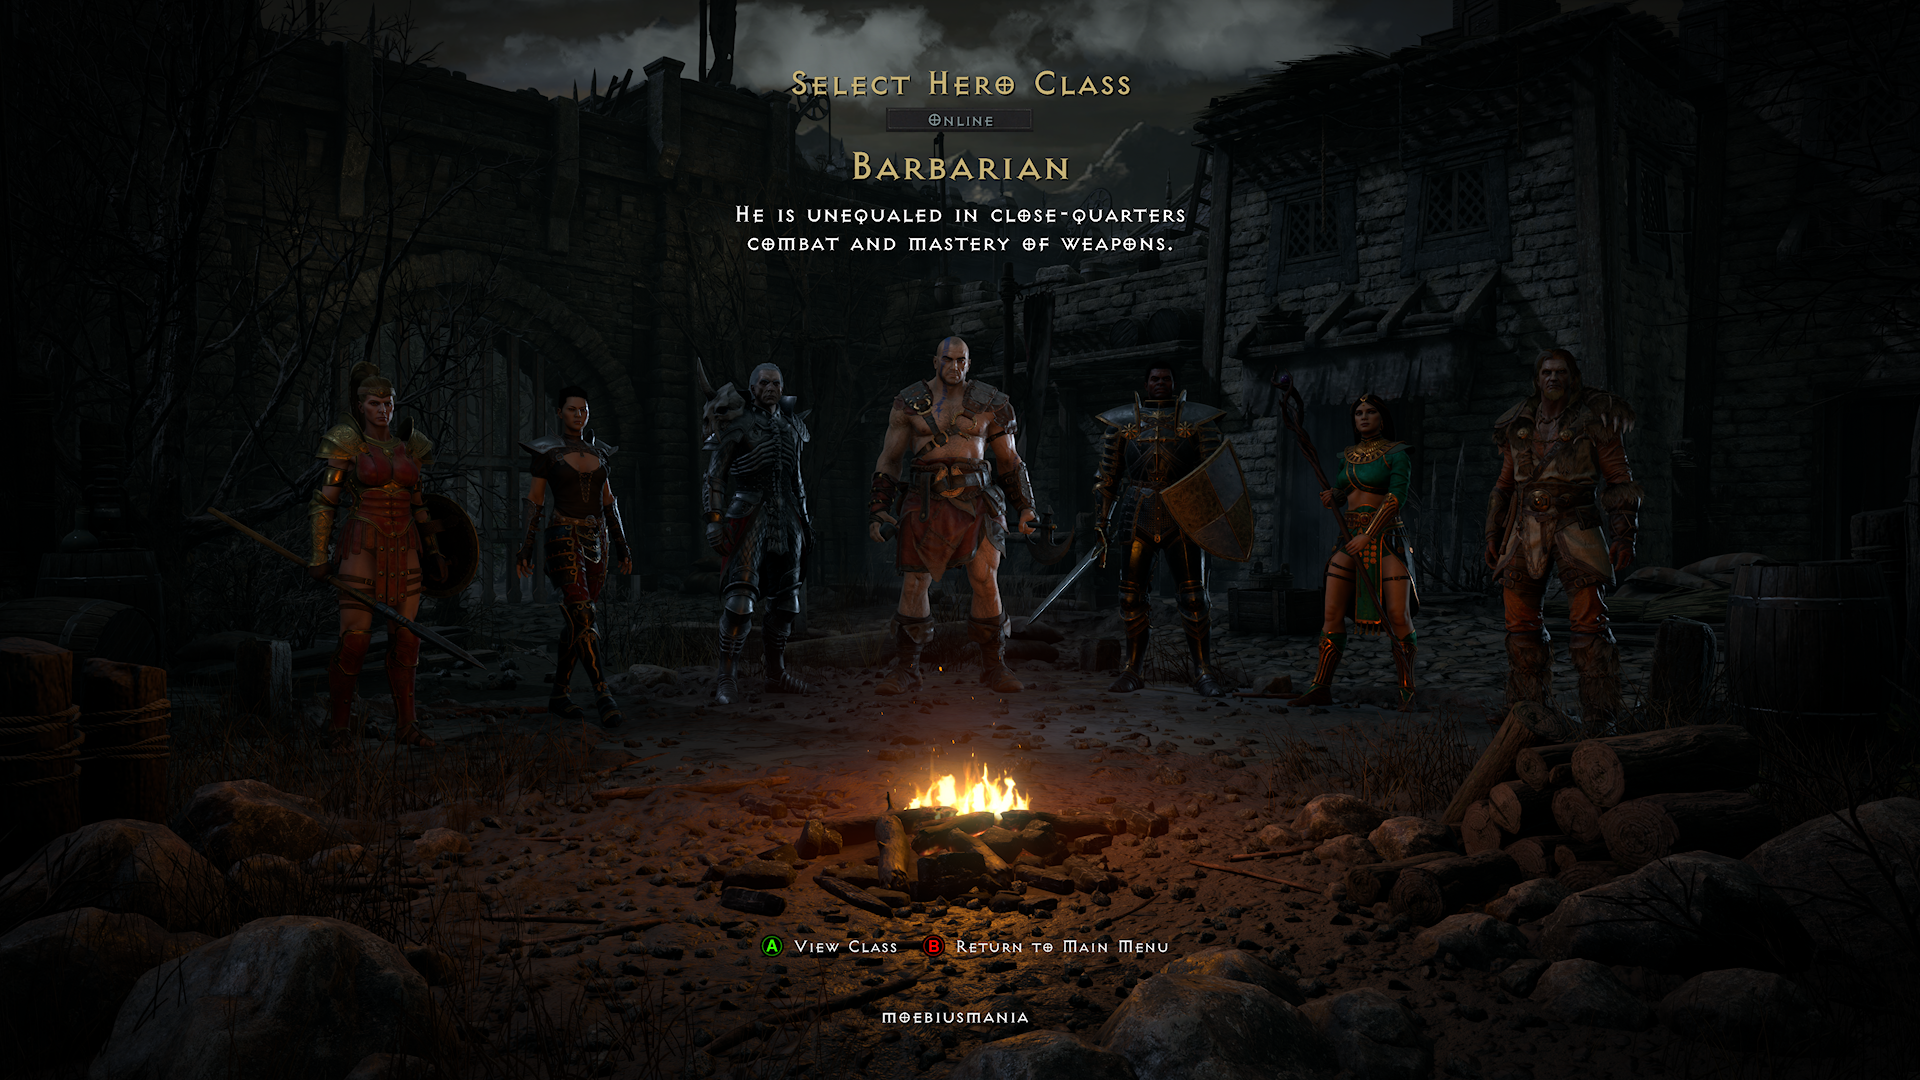 I personaggi/classi di Diablo II in posa prima dell'inizio della festa.